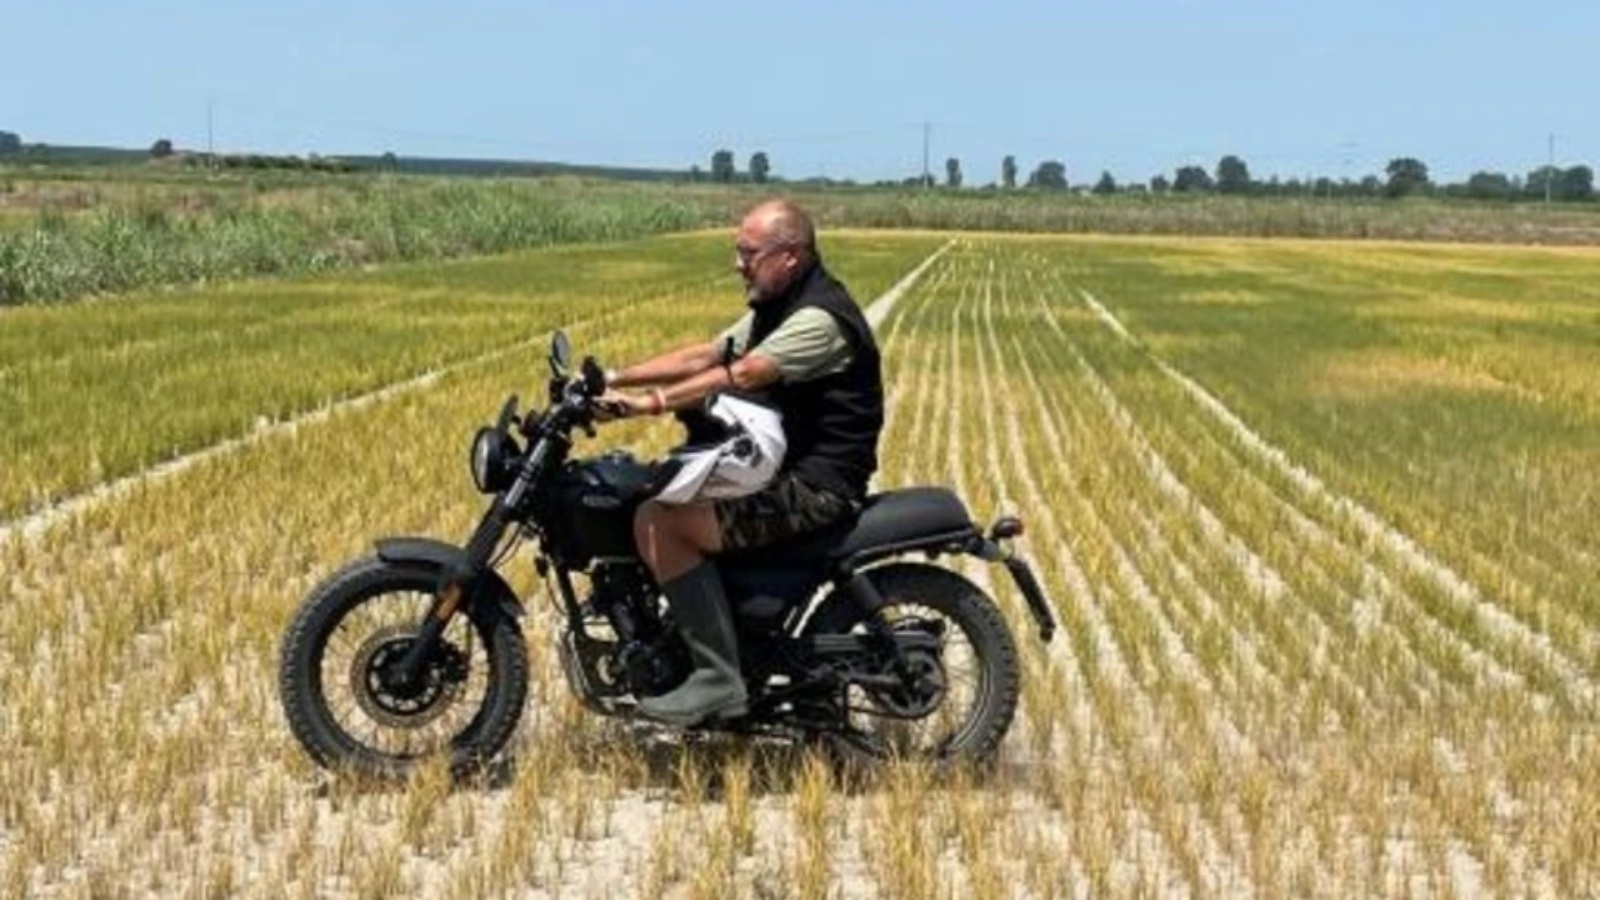 مزراع الأرز داريو فيتسيني يعبر بدارجته النارية أحد حقوله في زيمي في 18 يوليو 2022 